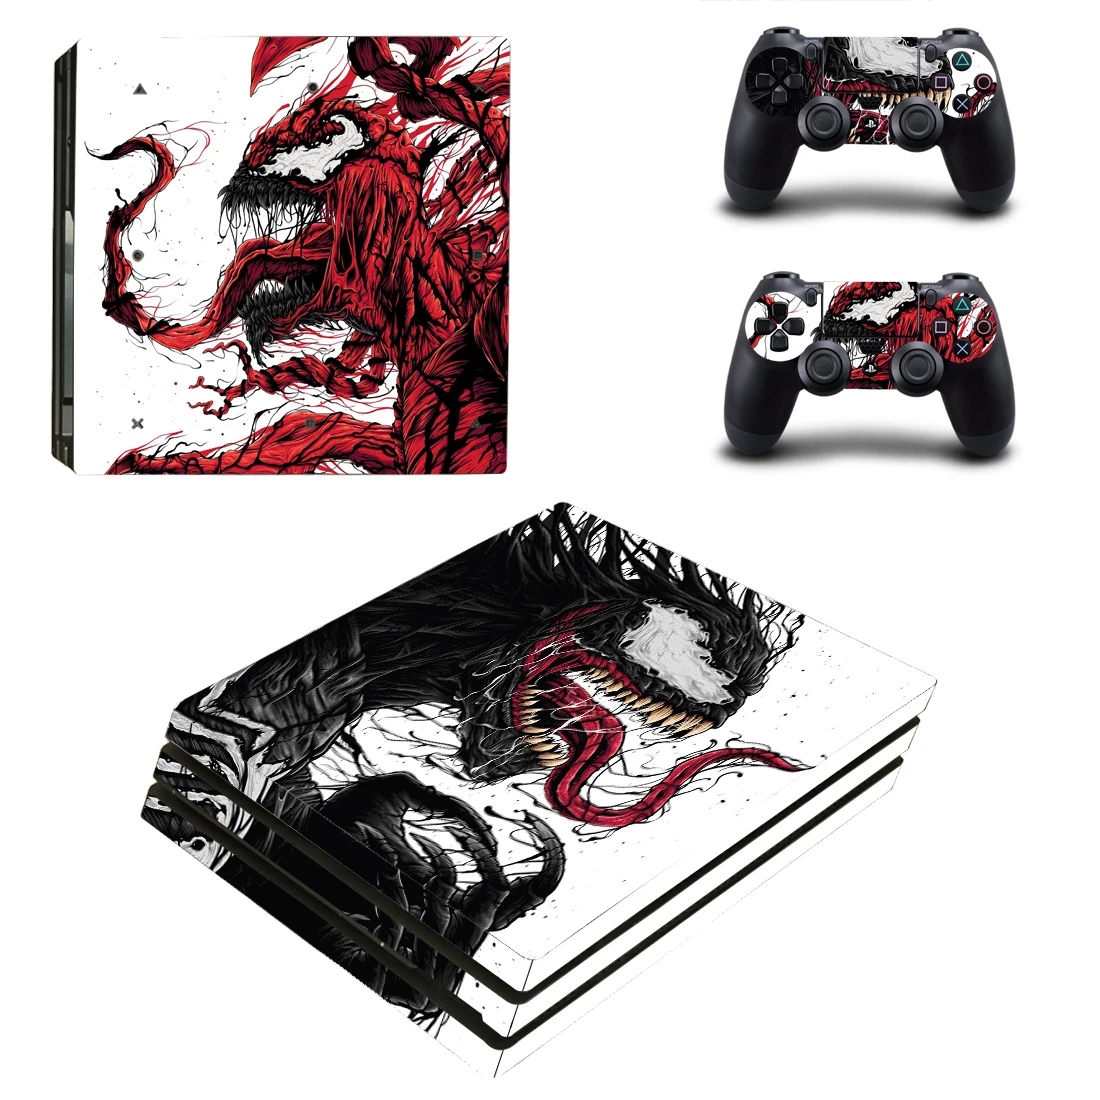 

Наклейка Venom Film PS4 Pro s Play station 4, наклейка для PlayStation 4 PS4 Pro, чехол для консоли и контроллера